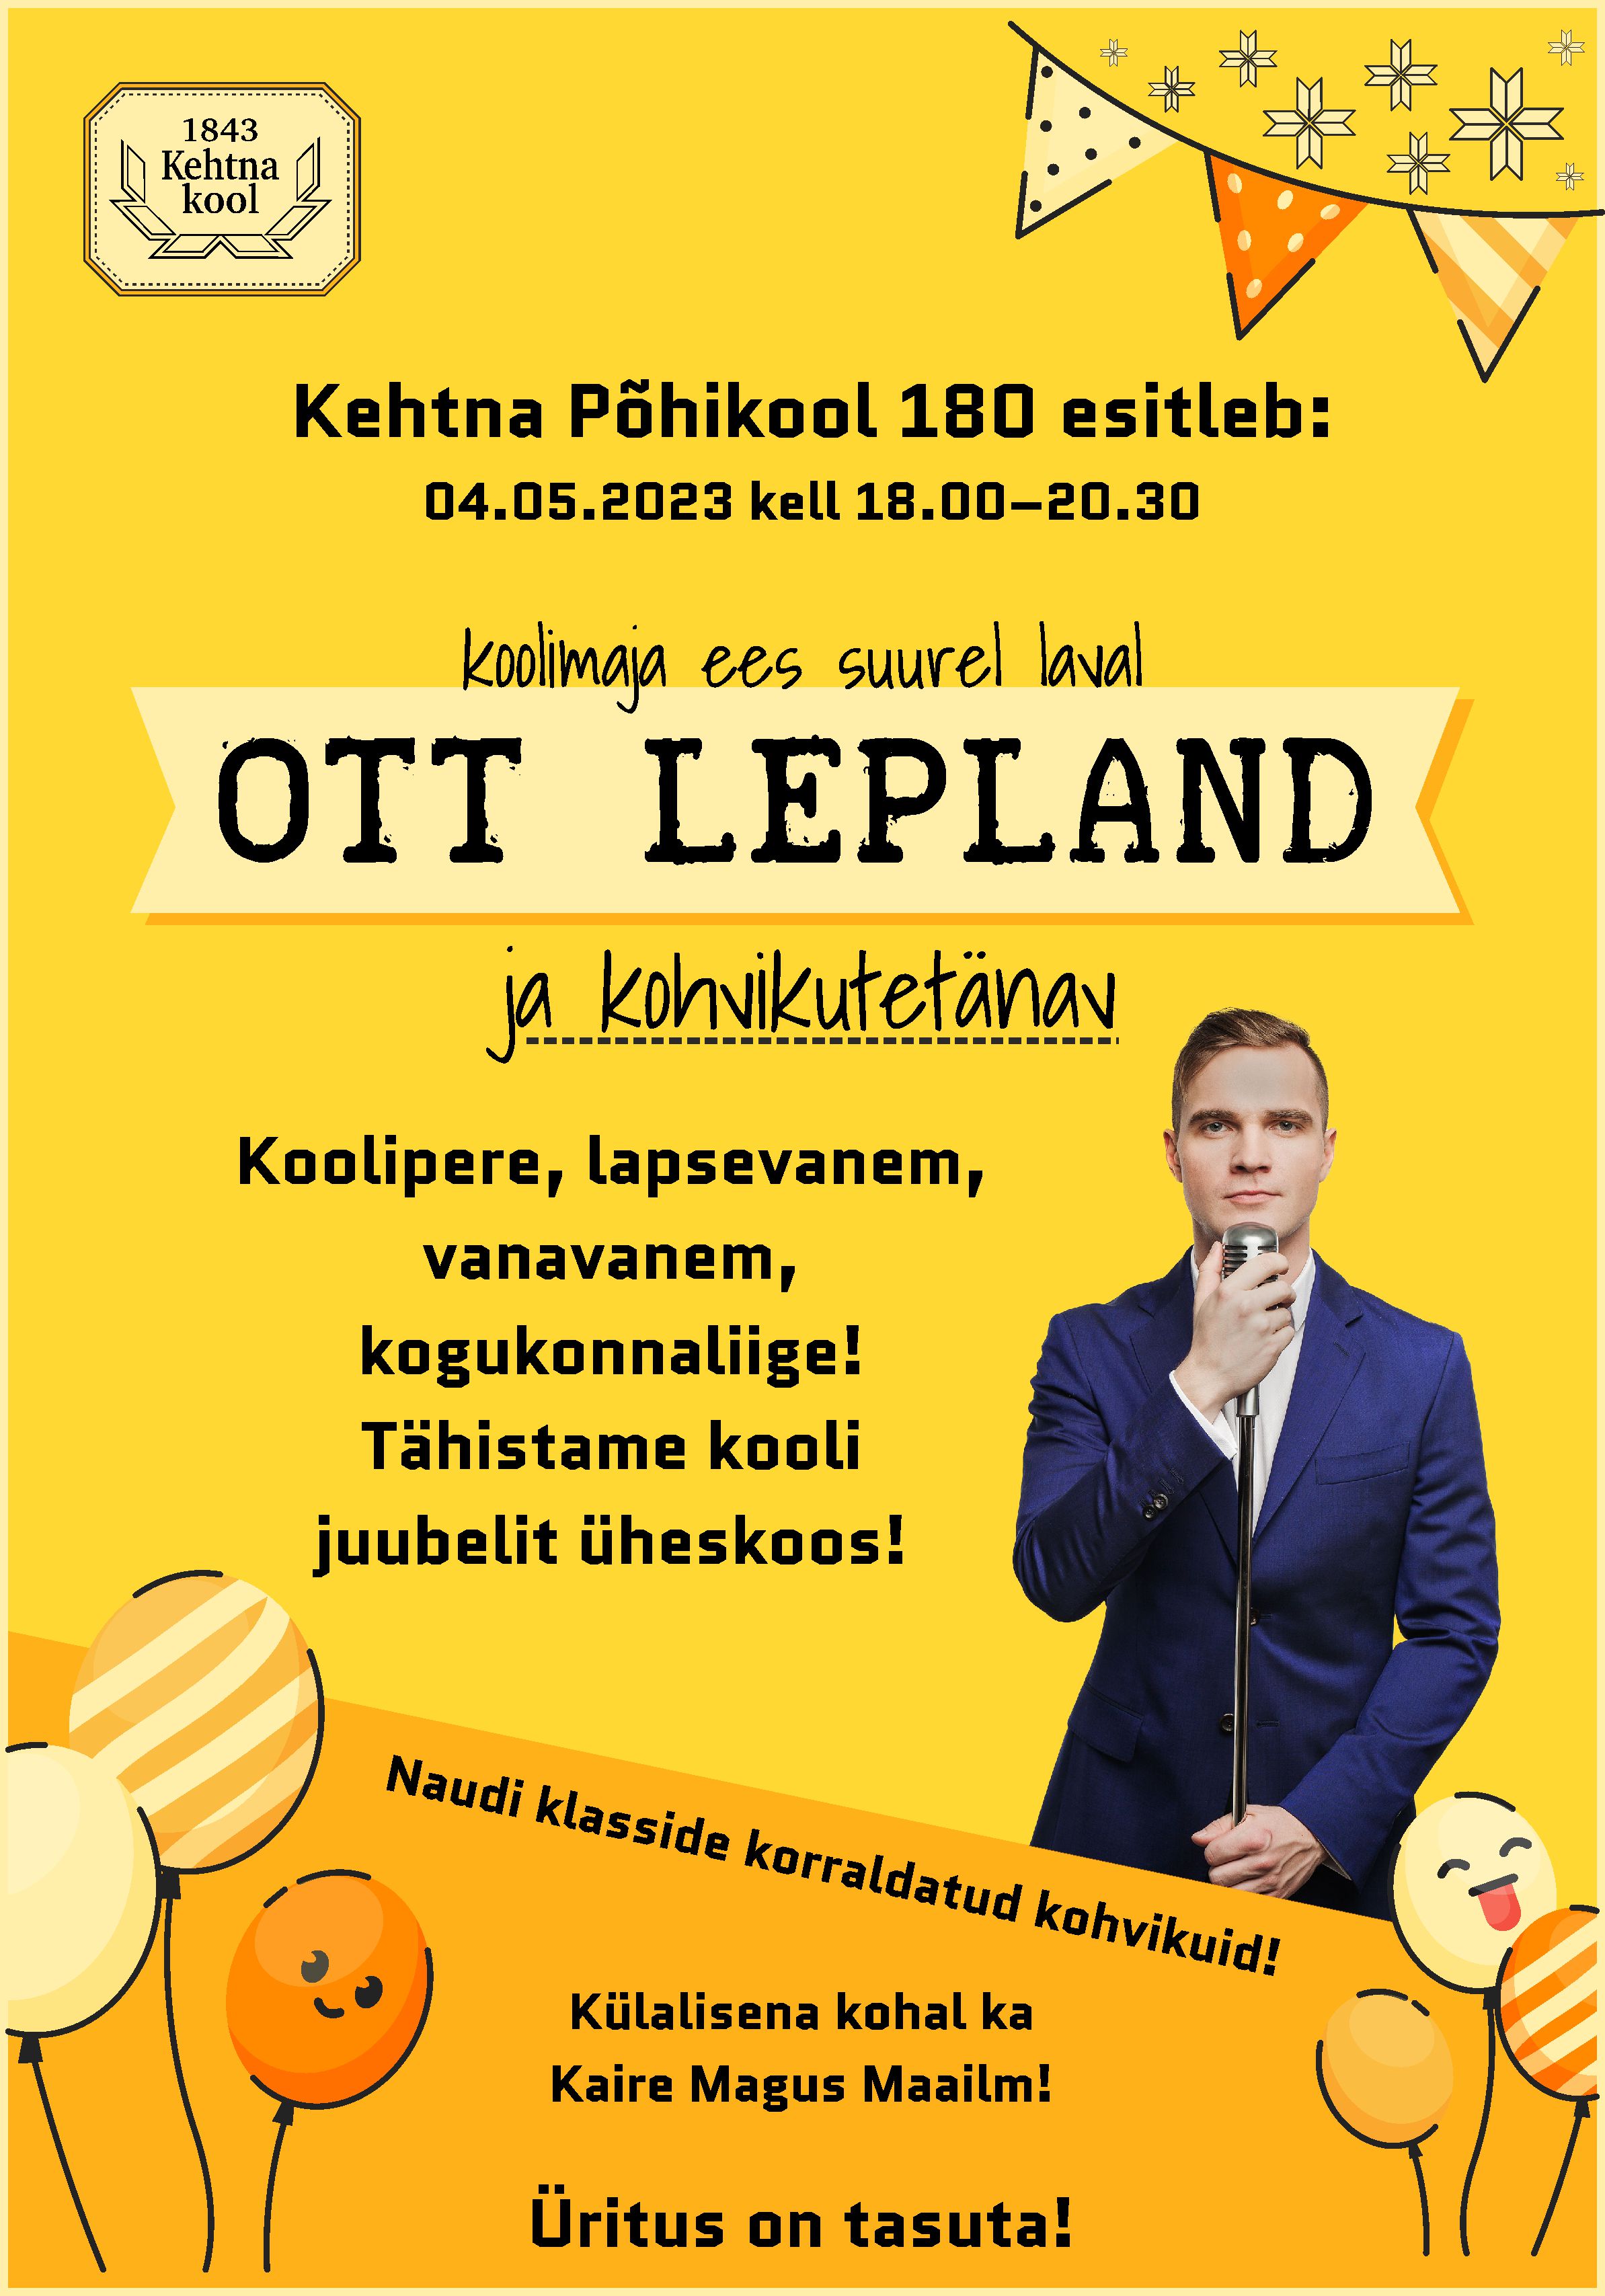 Kehtna Põhikool esitleb: suurel laval Ott Lepland!